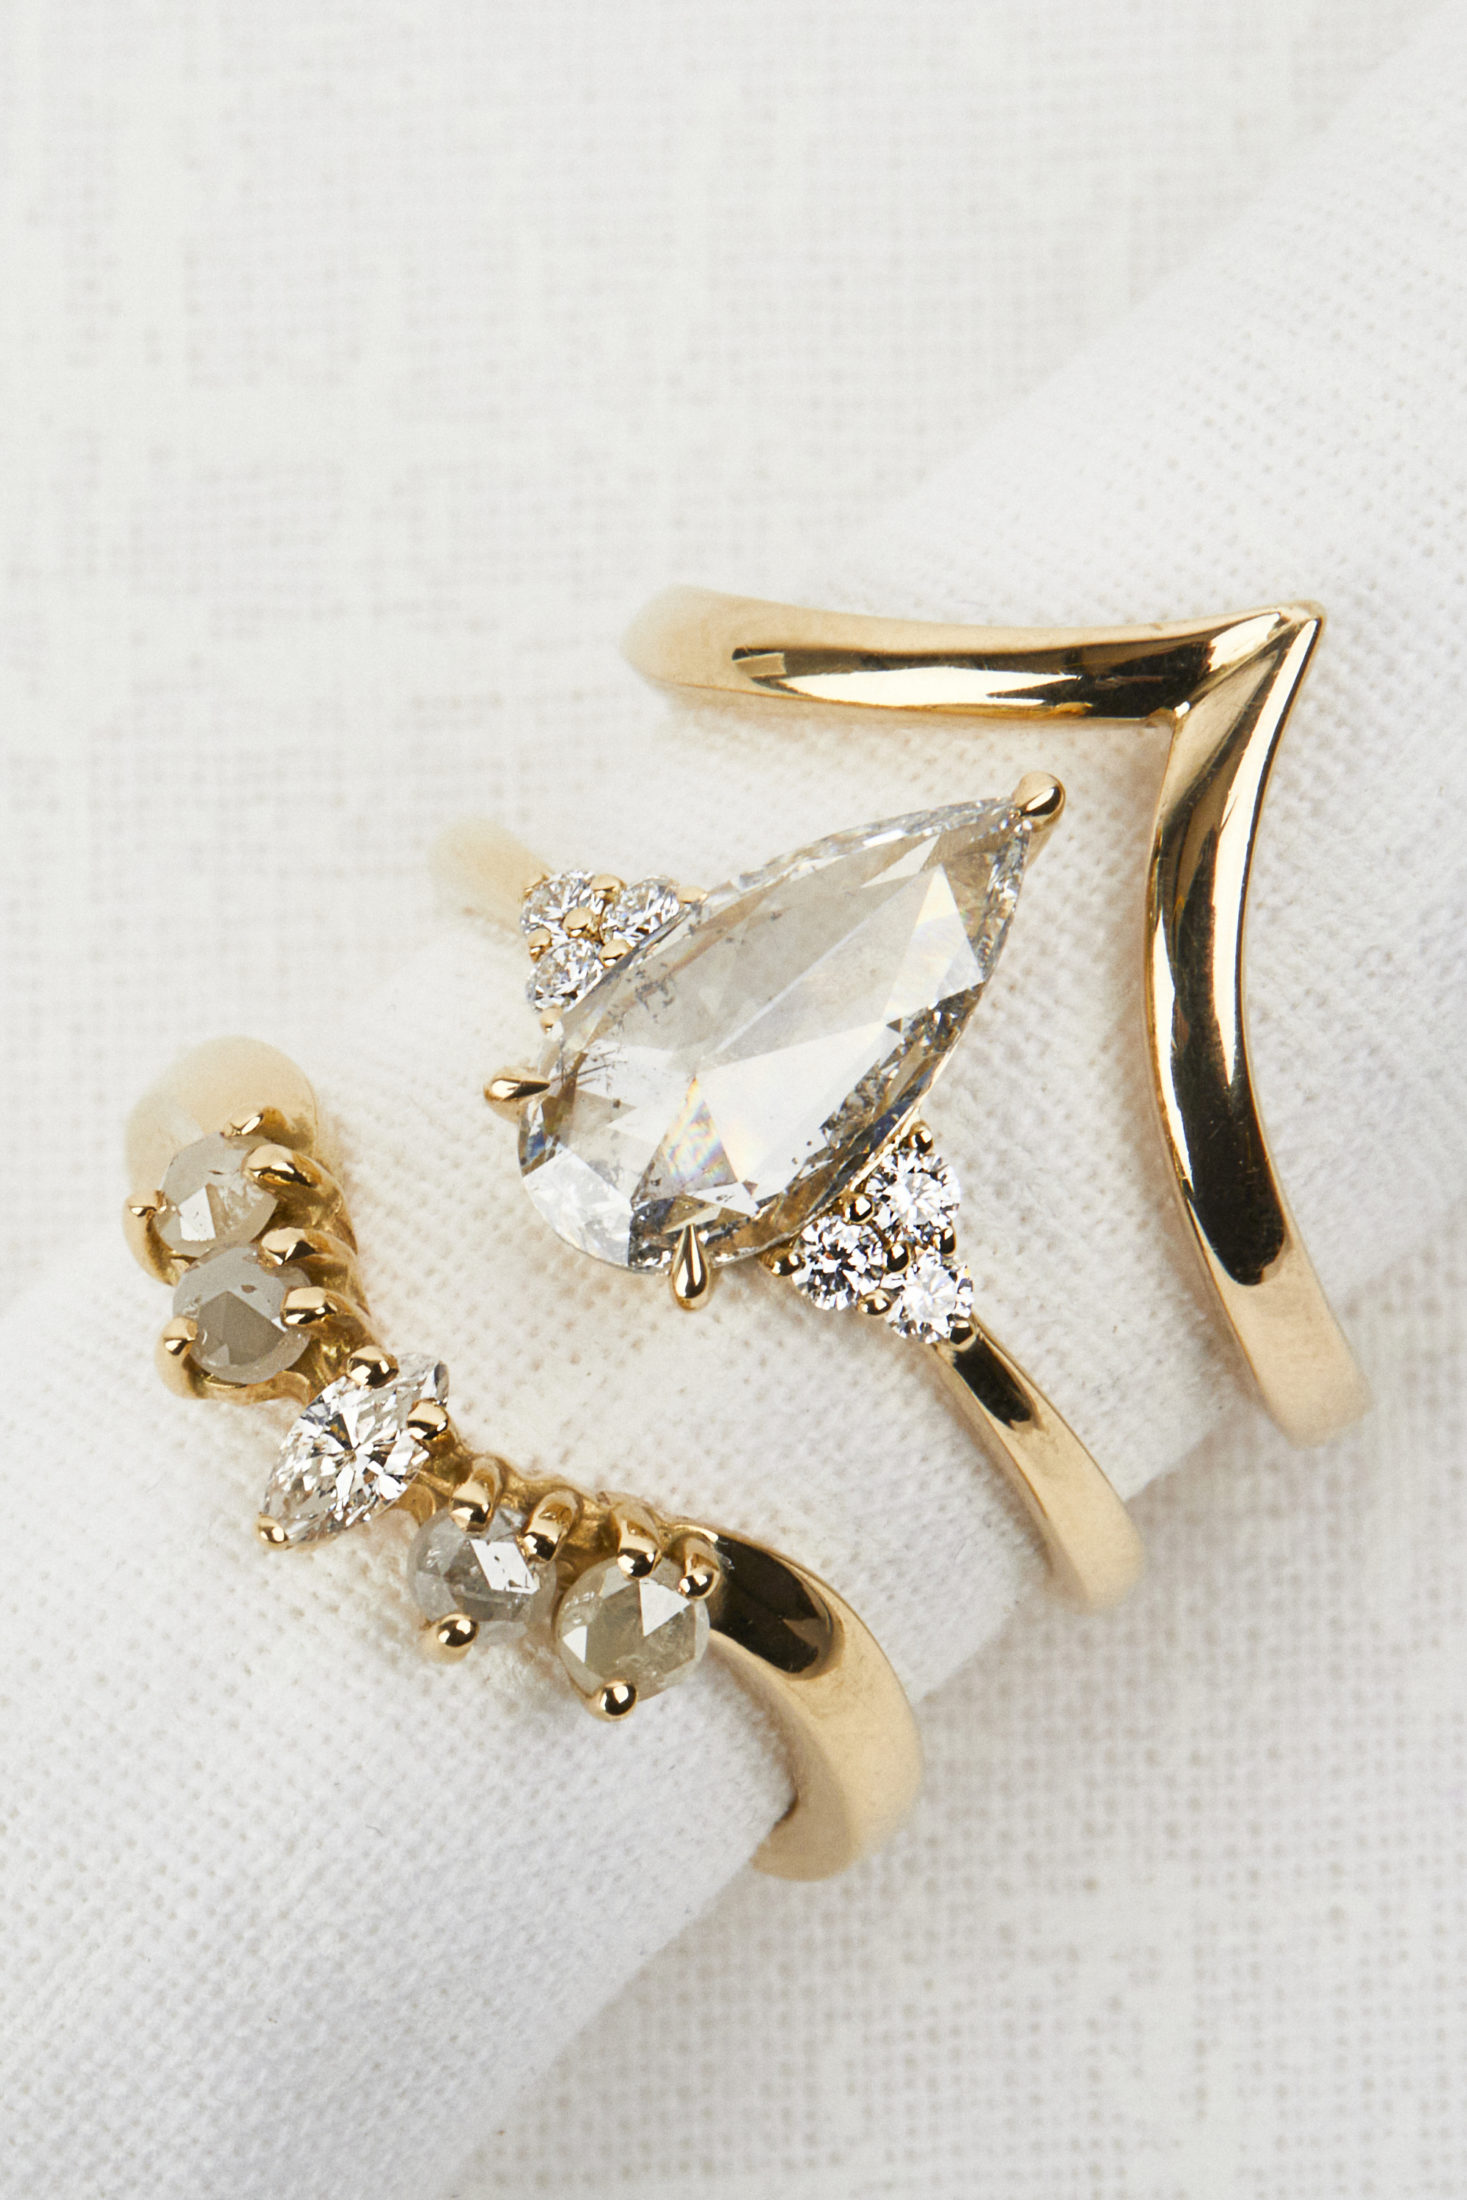 Sophia Perez Jewellery Engagement Rings